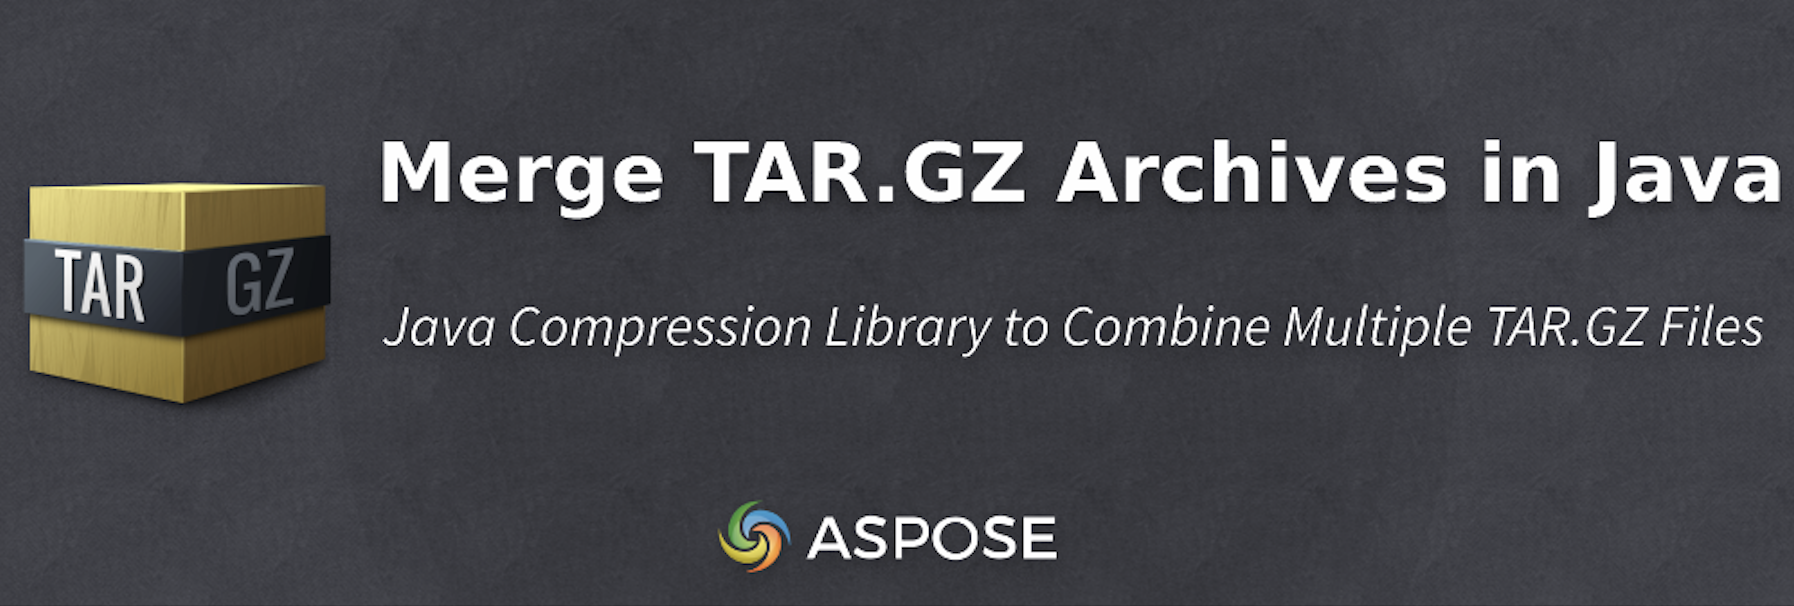 מיזוג ארכיוני TAR.GZ ב-Java באופן פרוגרמטי